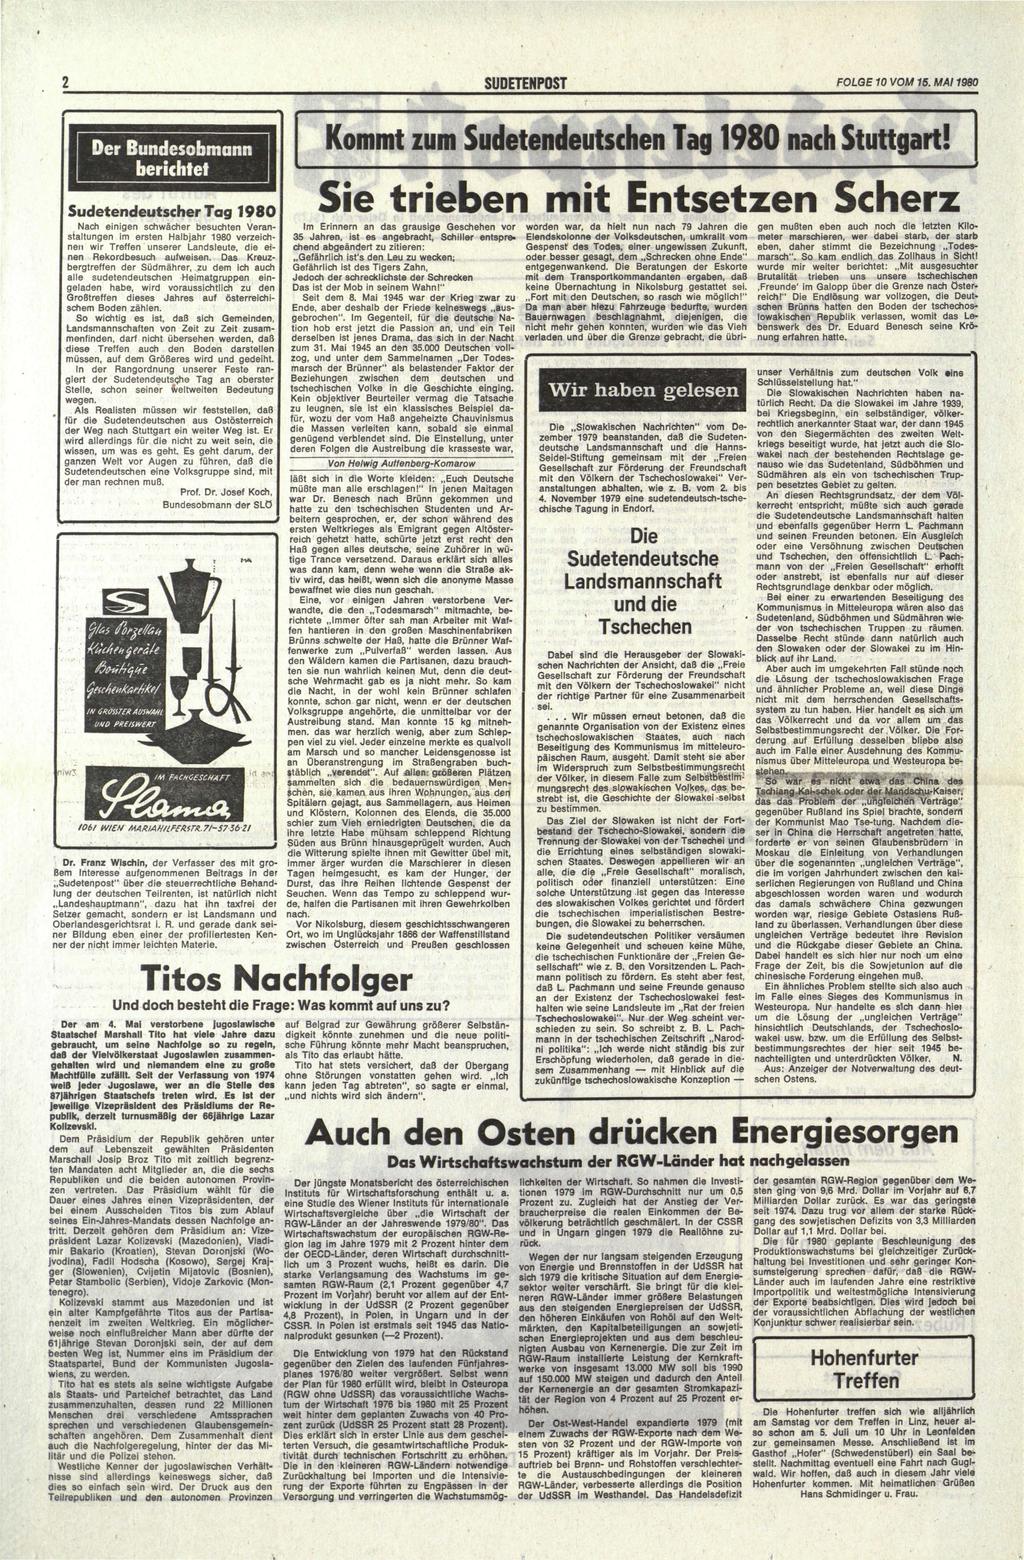 Der Bundesobmann berichtet Sudetendeutscher Tag 1980 Kommt zum Sudetendeutschen Tag 1980 nach Stuttgart!